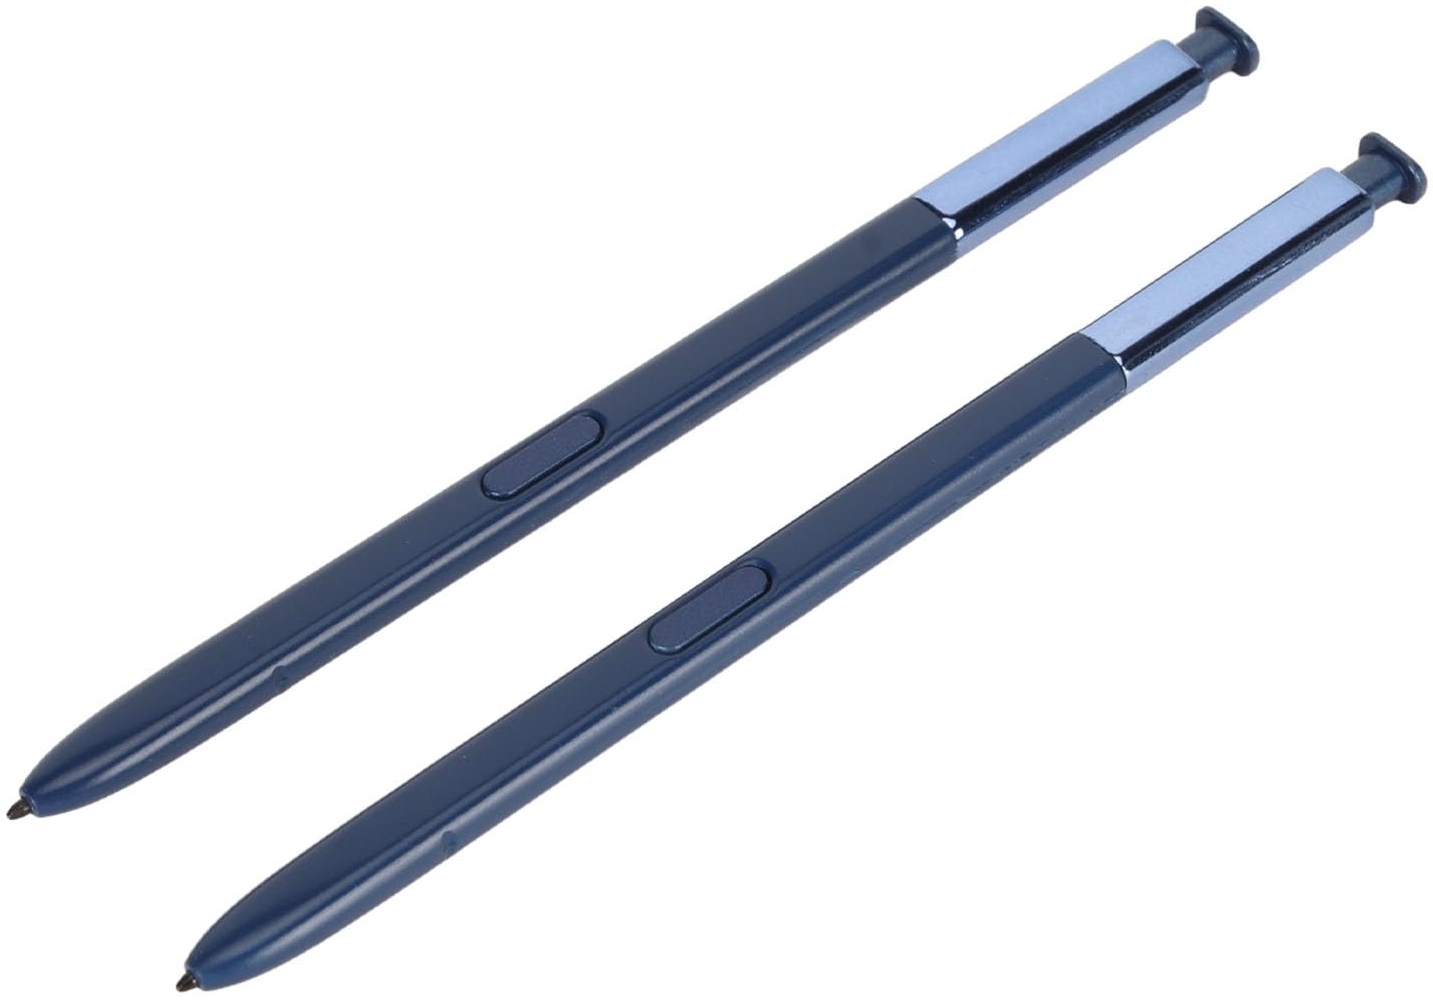 2 Stück Note 8 Stylus Pen Ersatz für Samsung Galaxy Note 8, Stylus Touch S Pen mit Spitzen, Ersatz-Touchscreen-Stift Touchscreen-Stift Stylus (Blau)